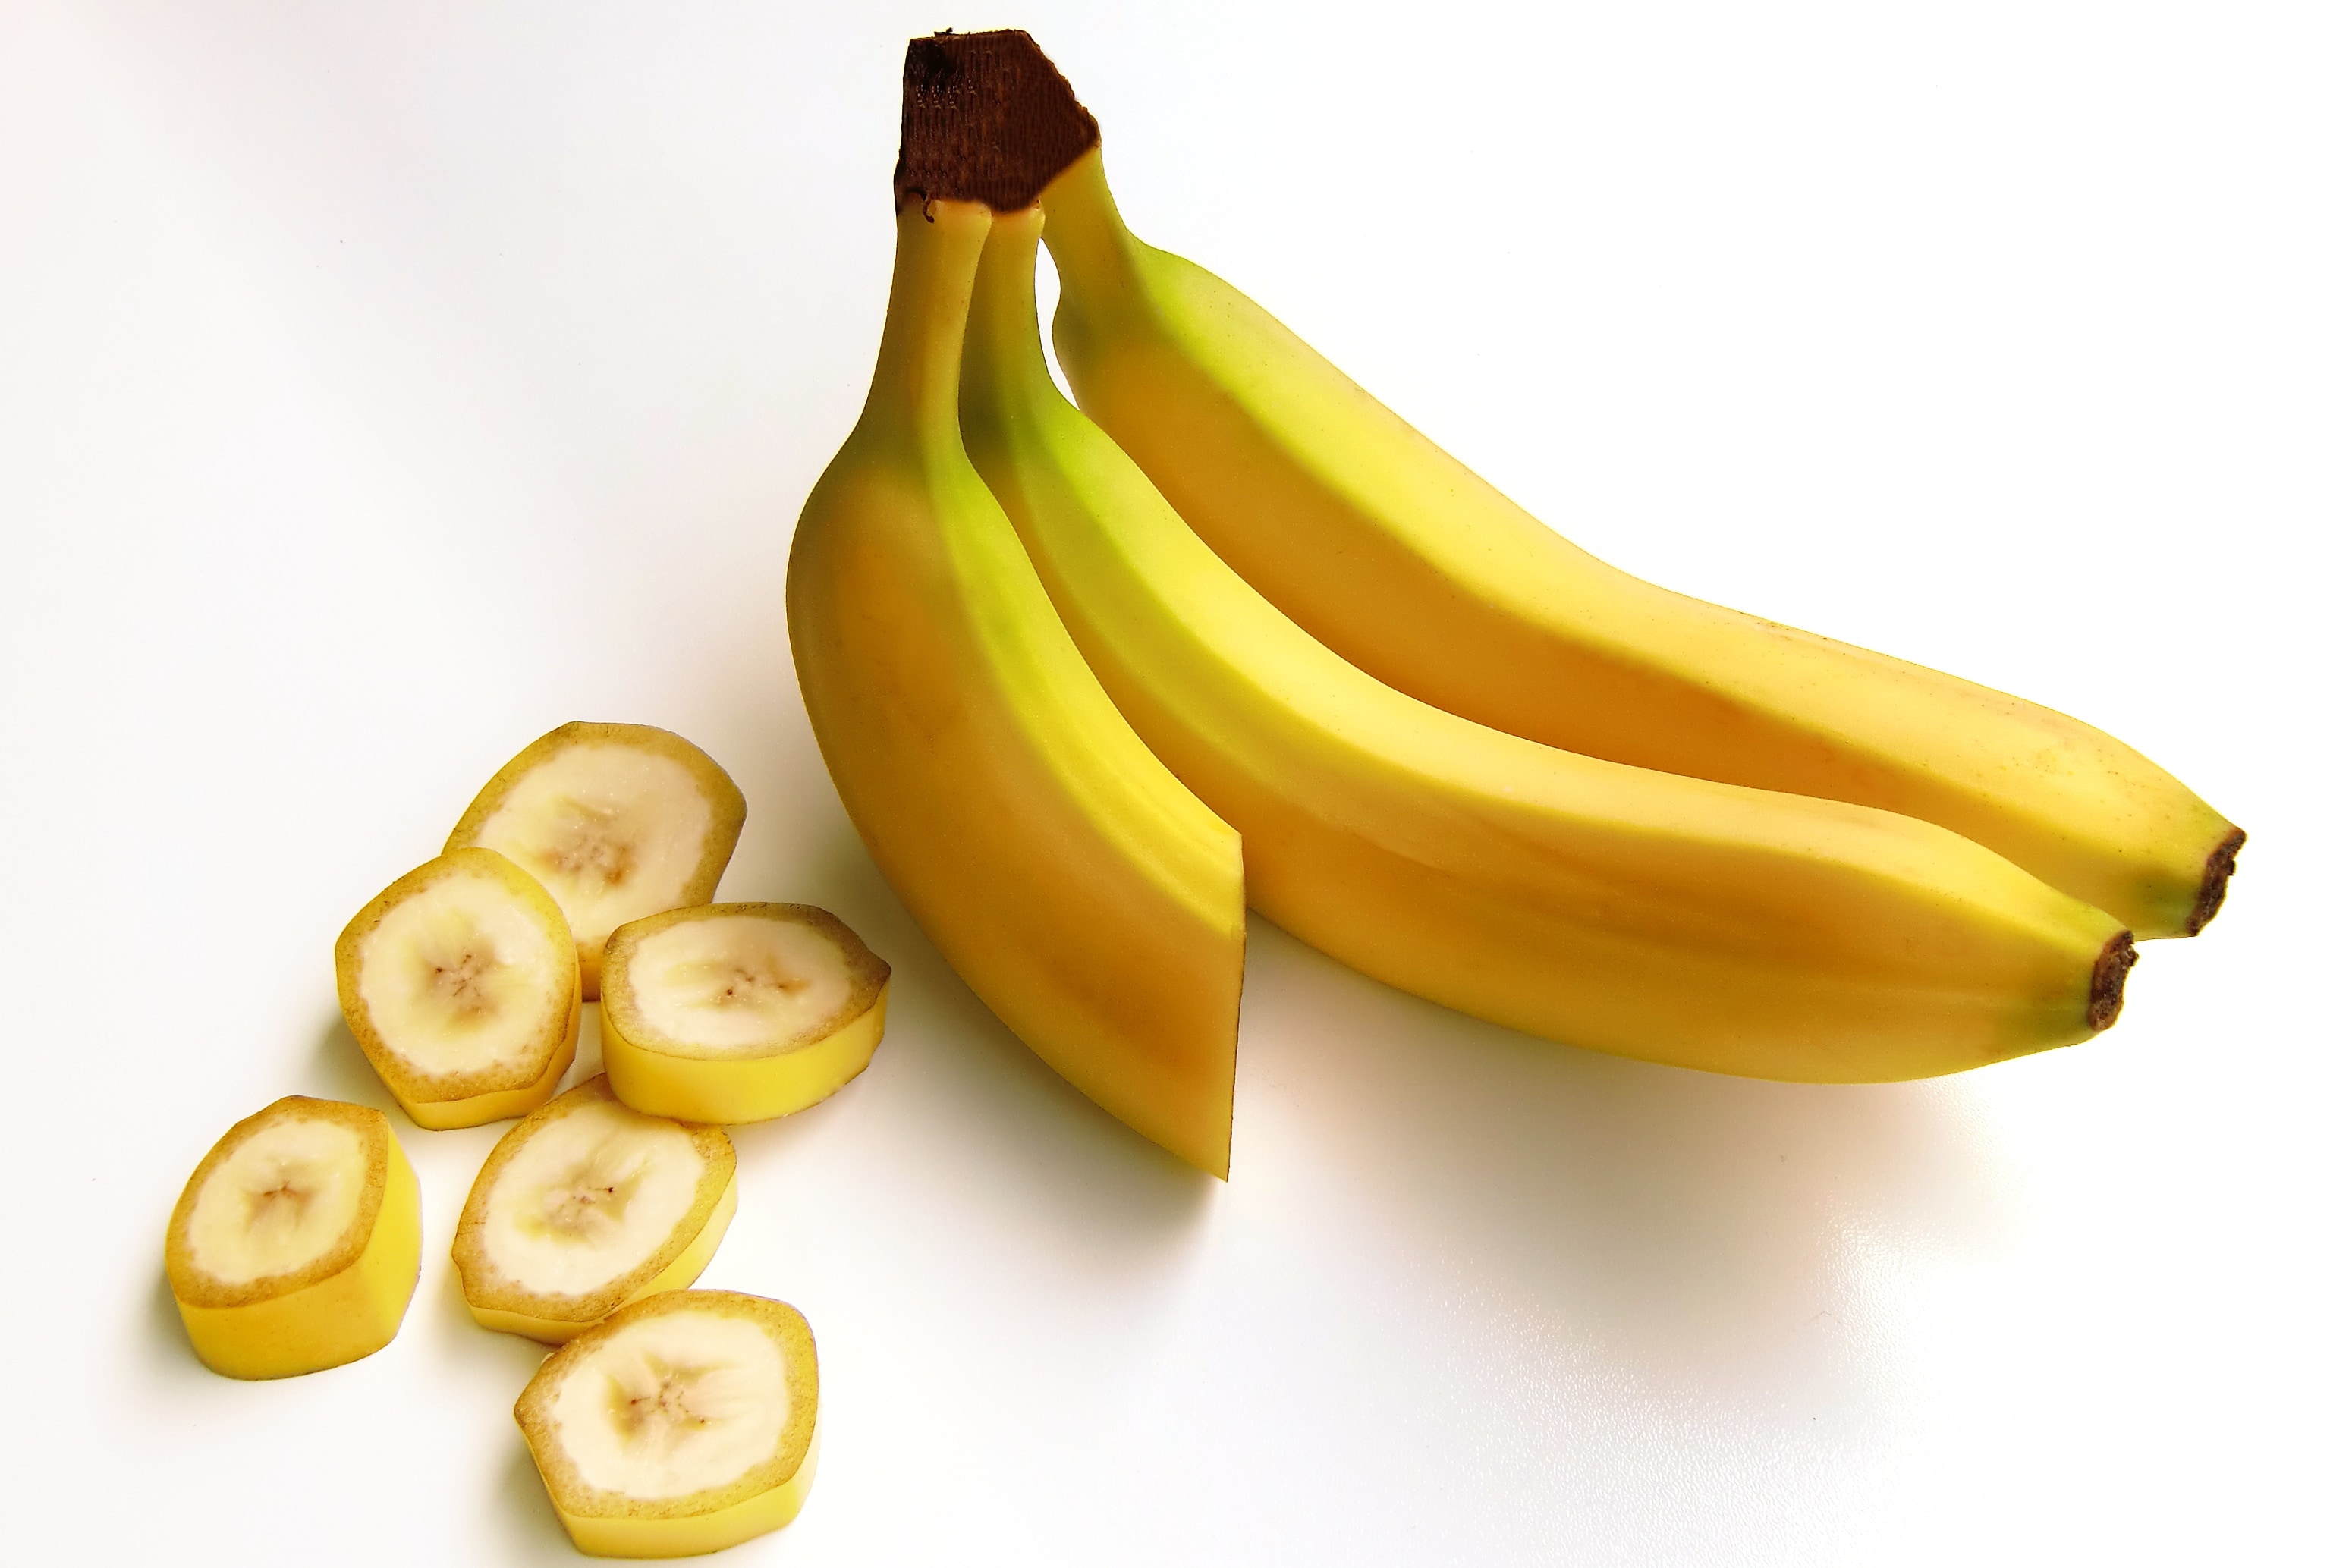 yellow ripe banana